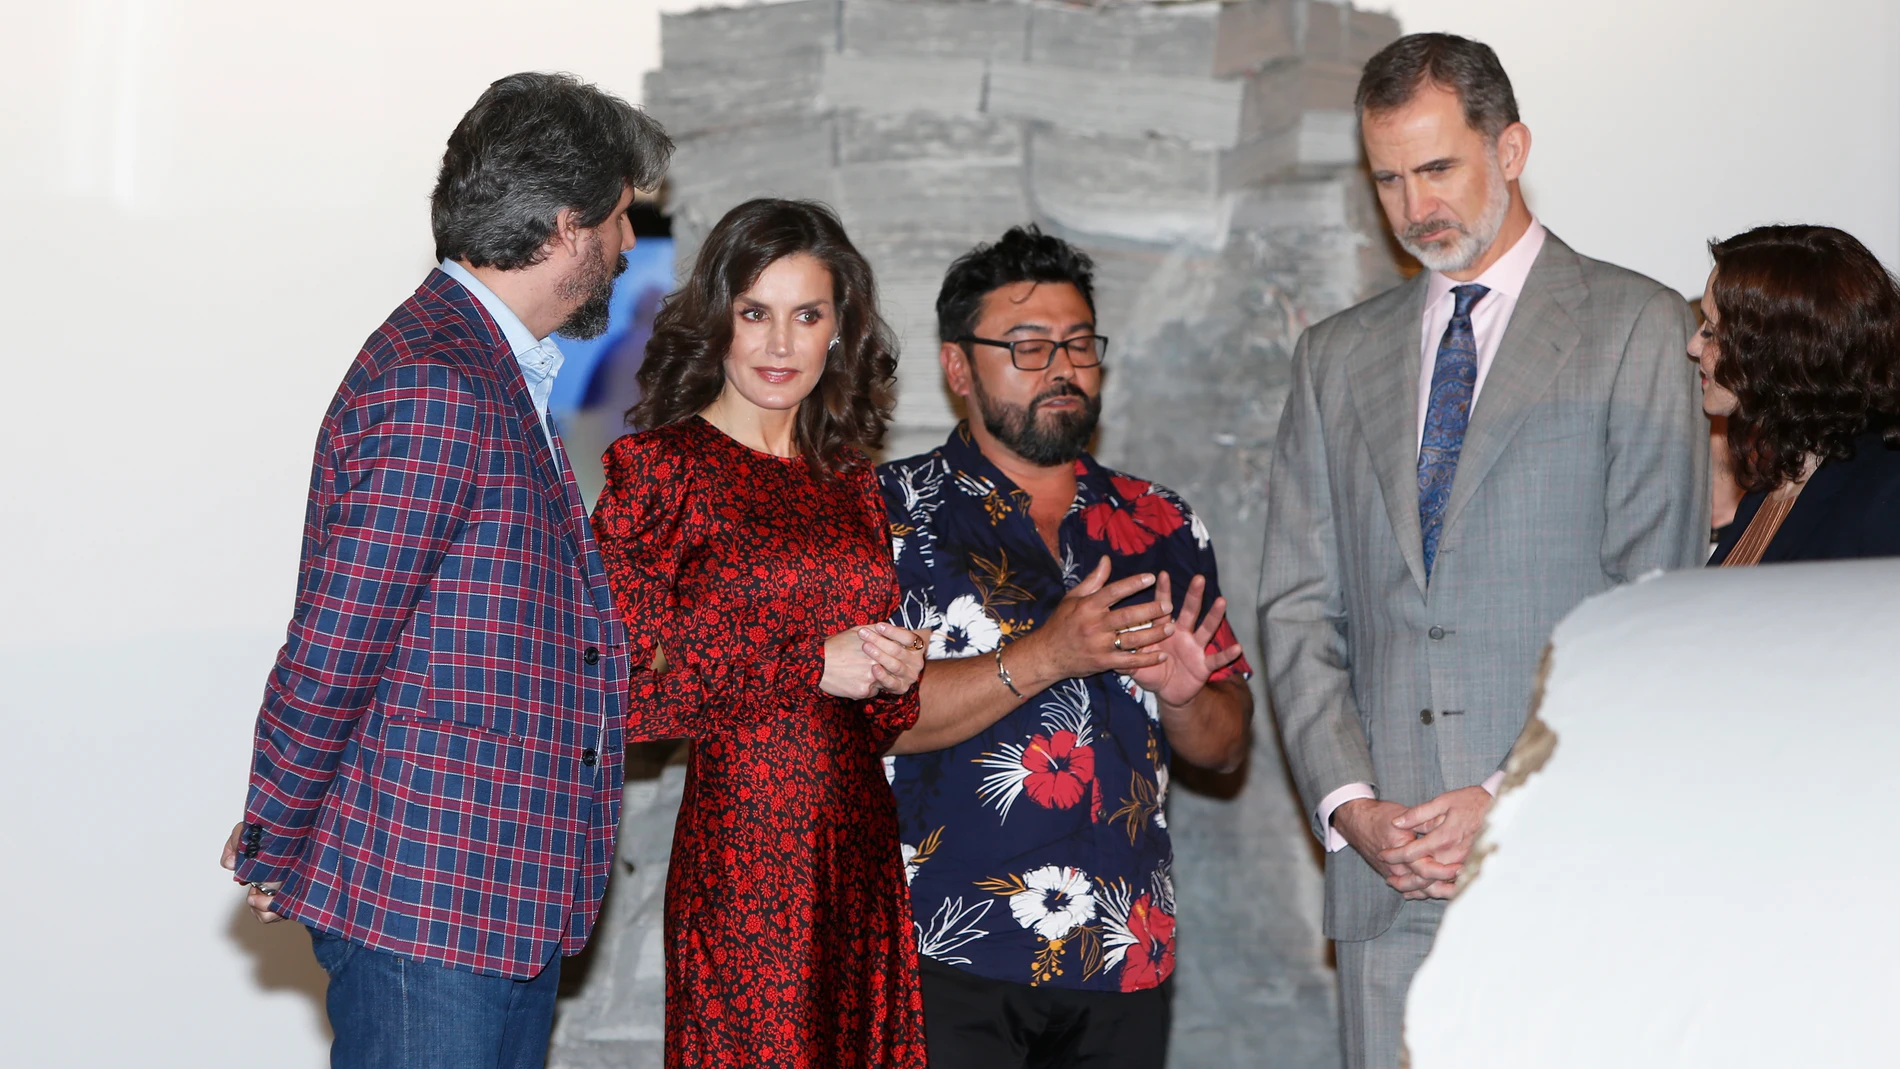 El Rey Felipe VI y la Reina Letizia durante el acto de inauguración de la Feria Internacional de Arte ARCO en Ifema, en Madrid, a 27 de febrero de 2020.REYES;REY FELIPE;LETIZIA;ARCO;ARTE;MADRIDJose Velasco / Europa Press27/02/2020